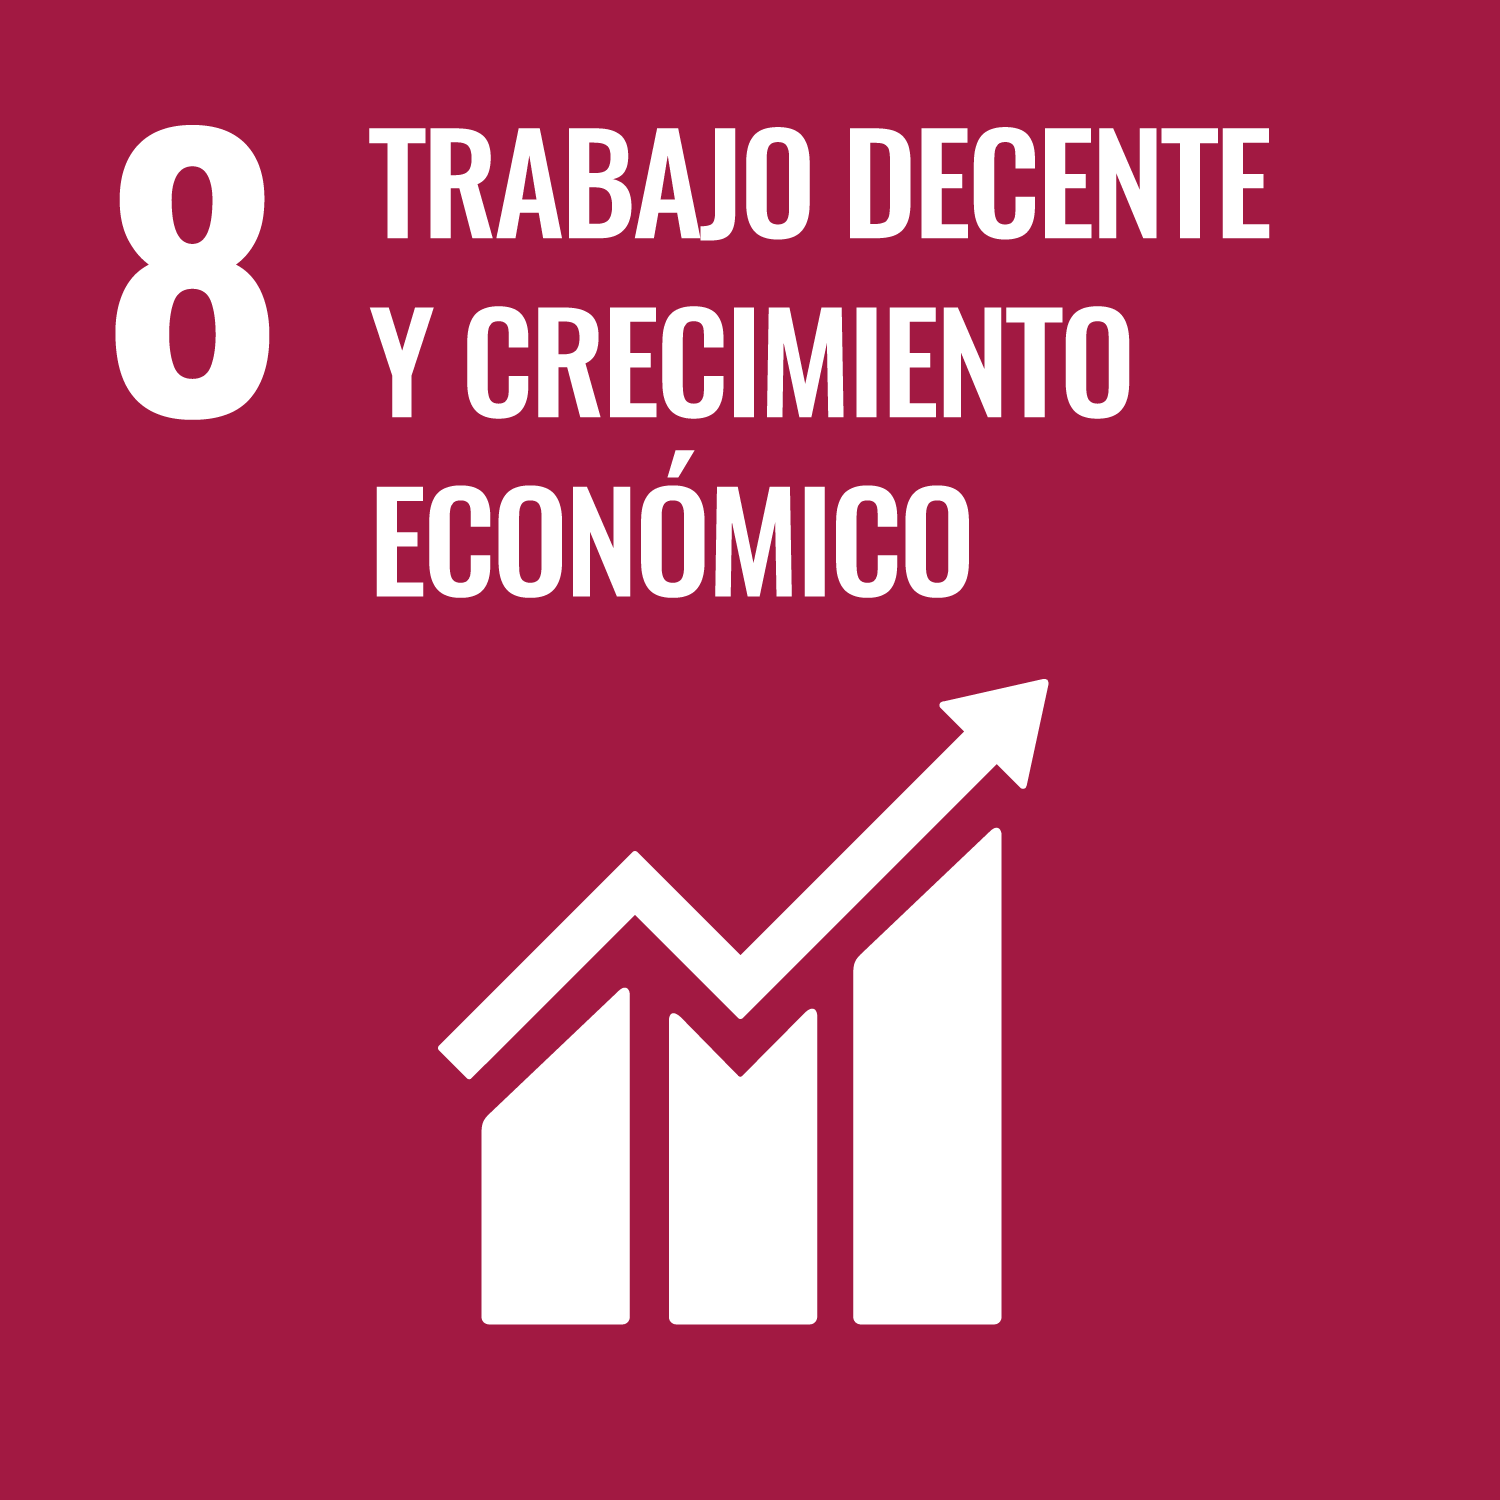 8. Promover el crecimiento económico sostenido, inclusivo y sostenible, el empleo pleno y productivo y el trabajo decente para todos.